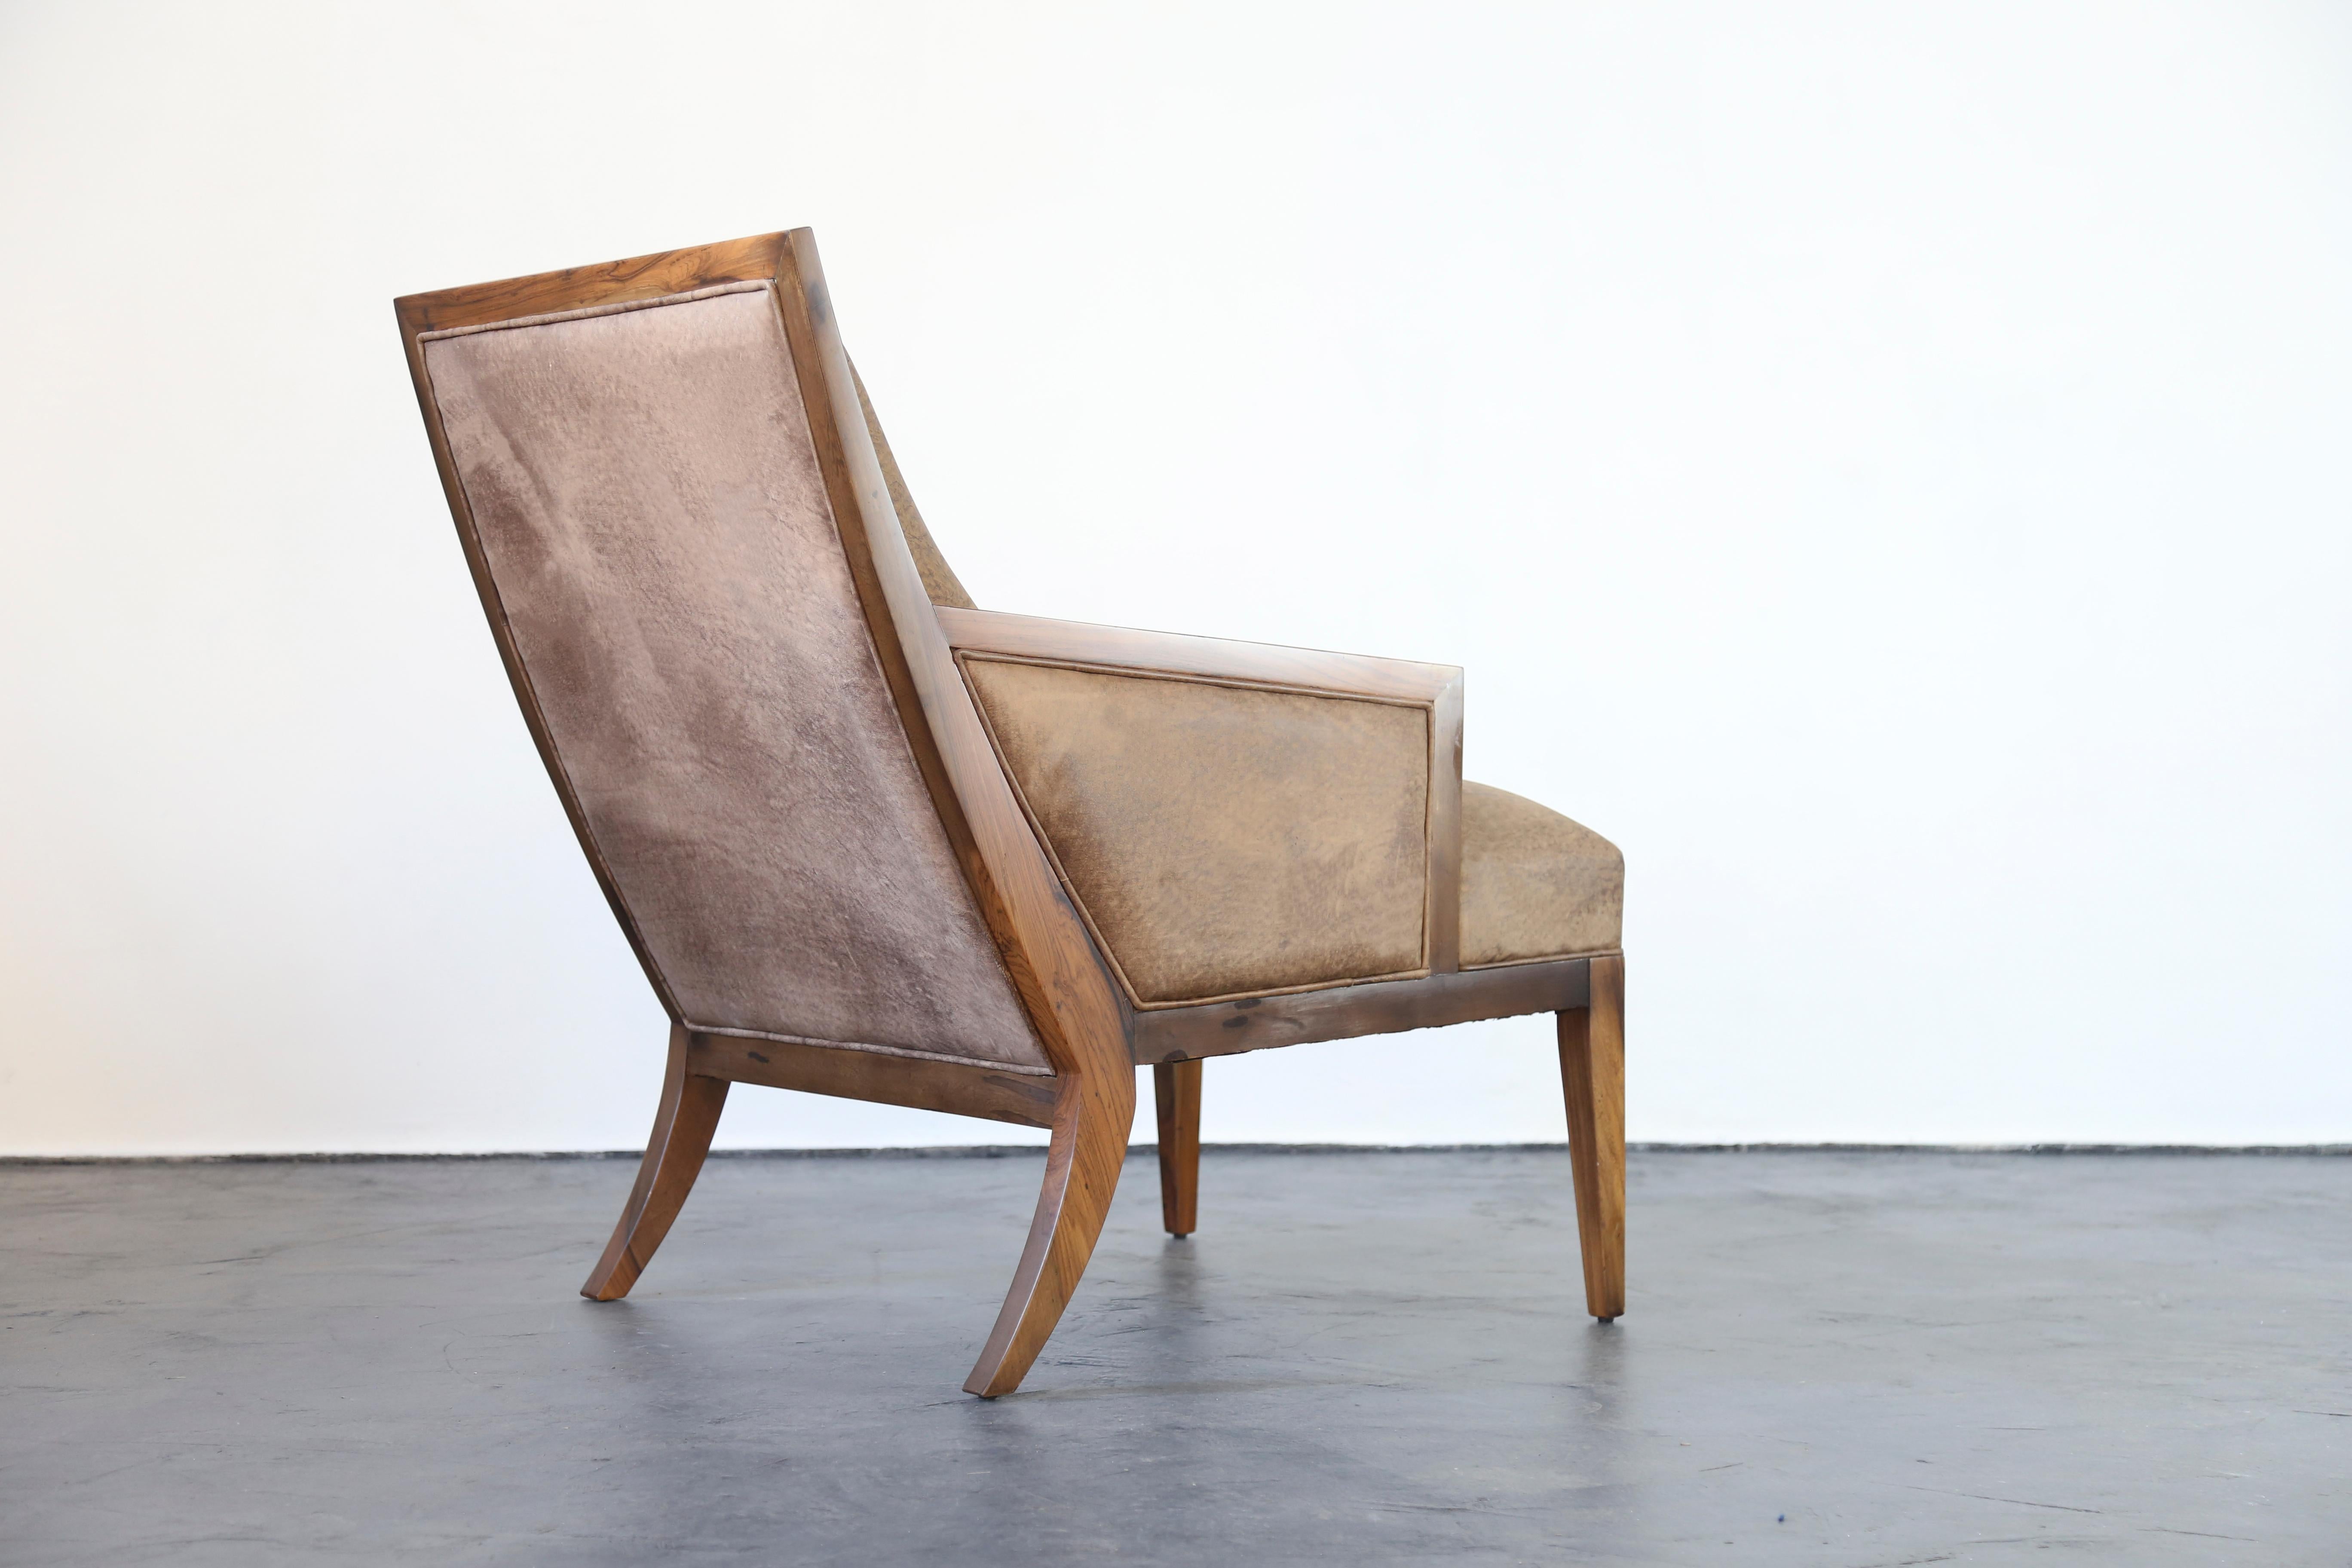 Der Belgrano Lounge Chair ist vom modernen Design der Mitte des 20. Jahrhunderts inspiriert. Er zeichnet sich durch eine Ziernaht aus, die von der oberen Ecke des Stuhls bis zur Sitzfläche verläuft. Abgebildet in argentinischem Palisanderholz und